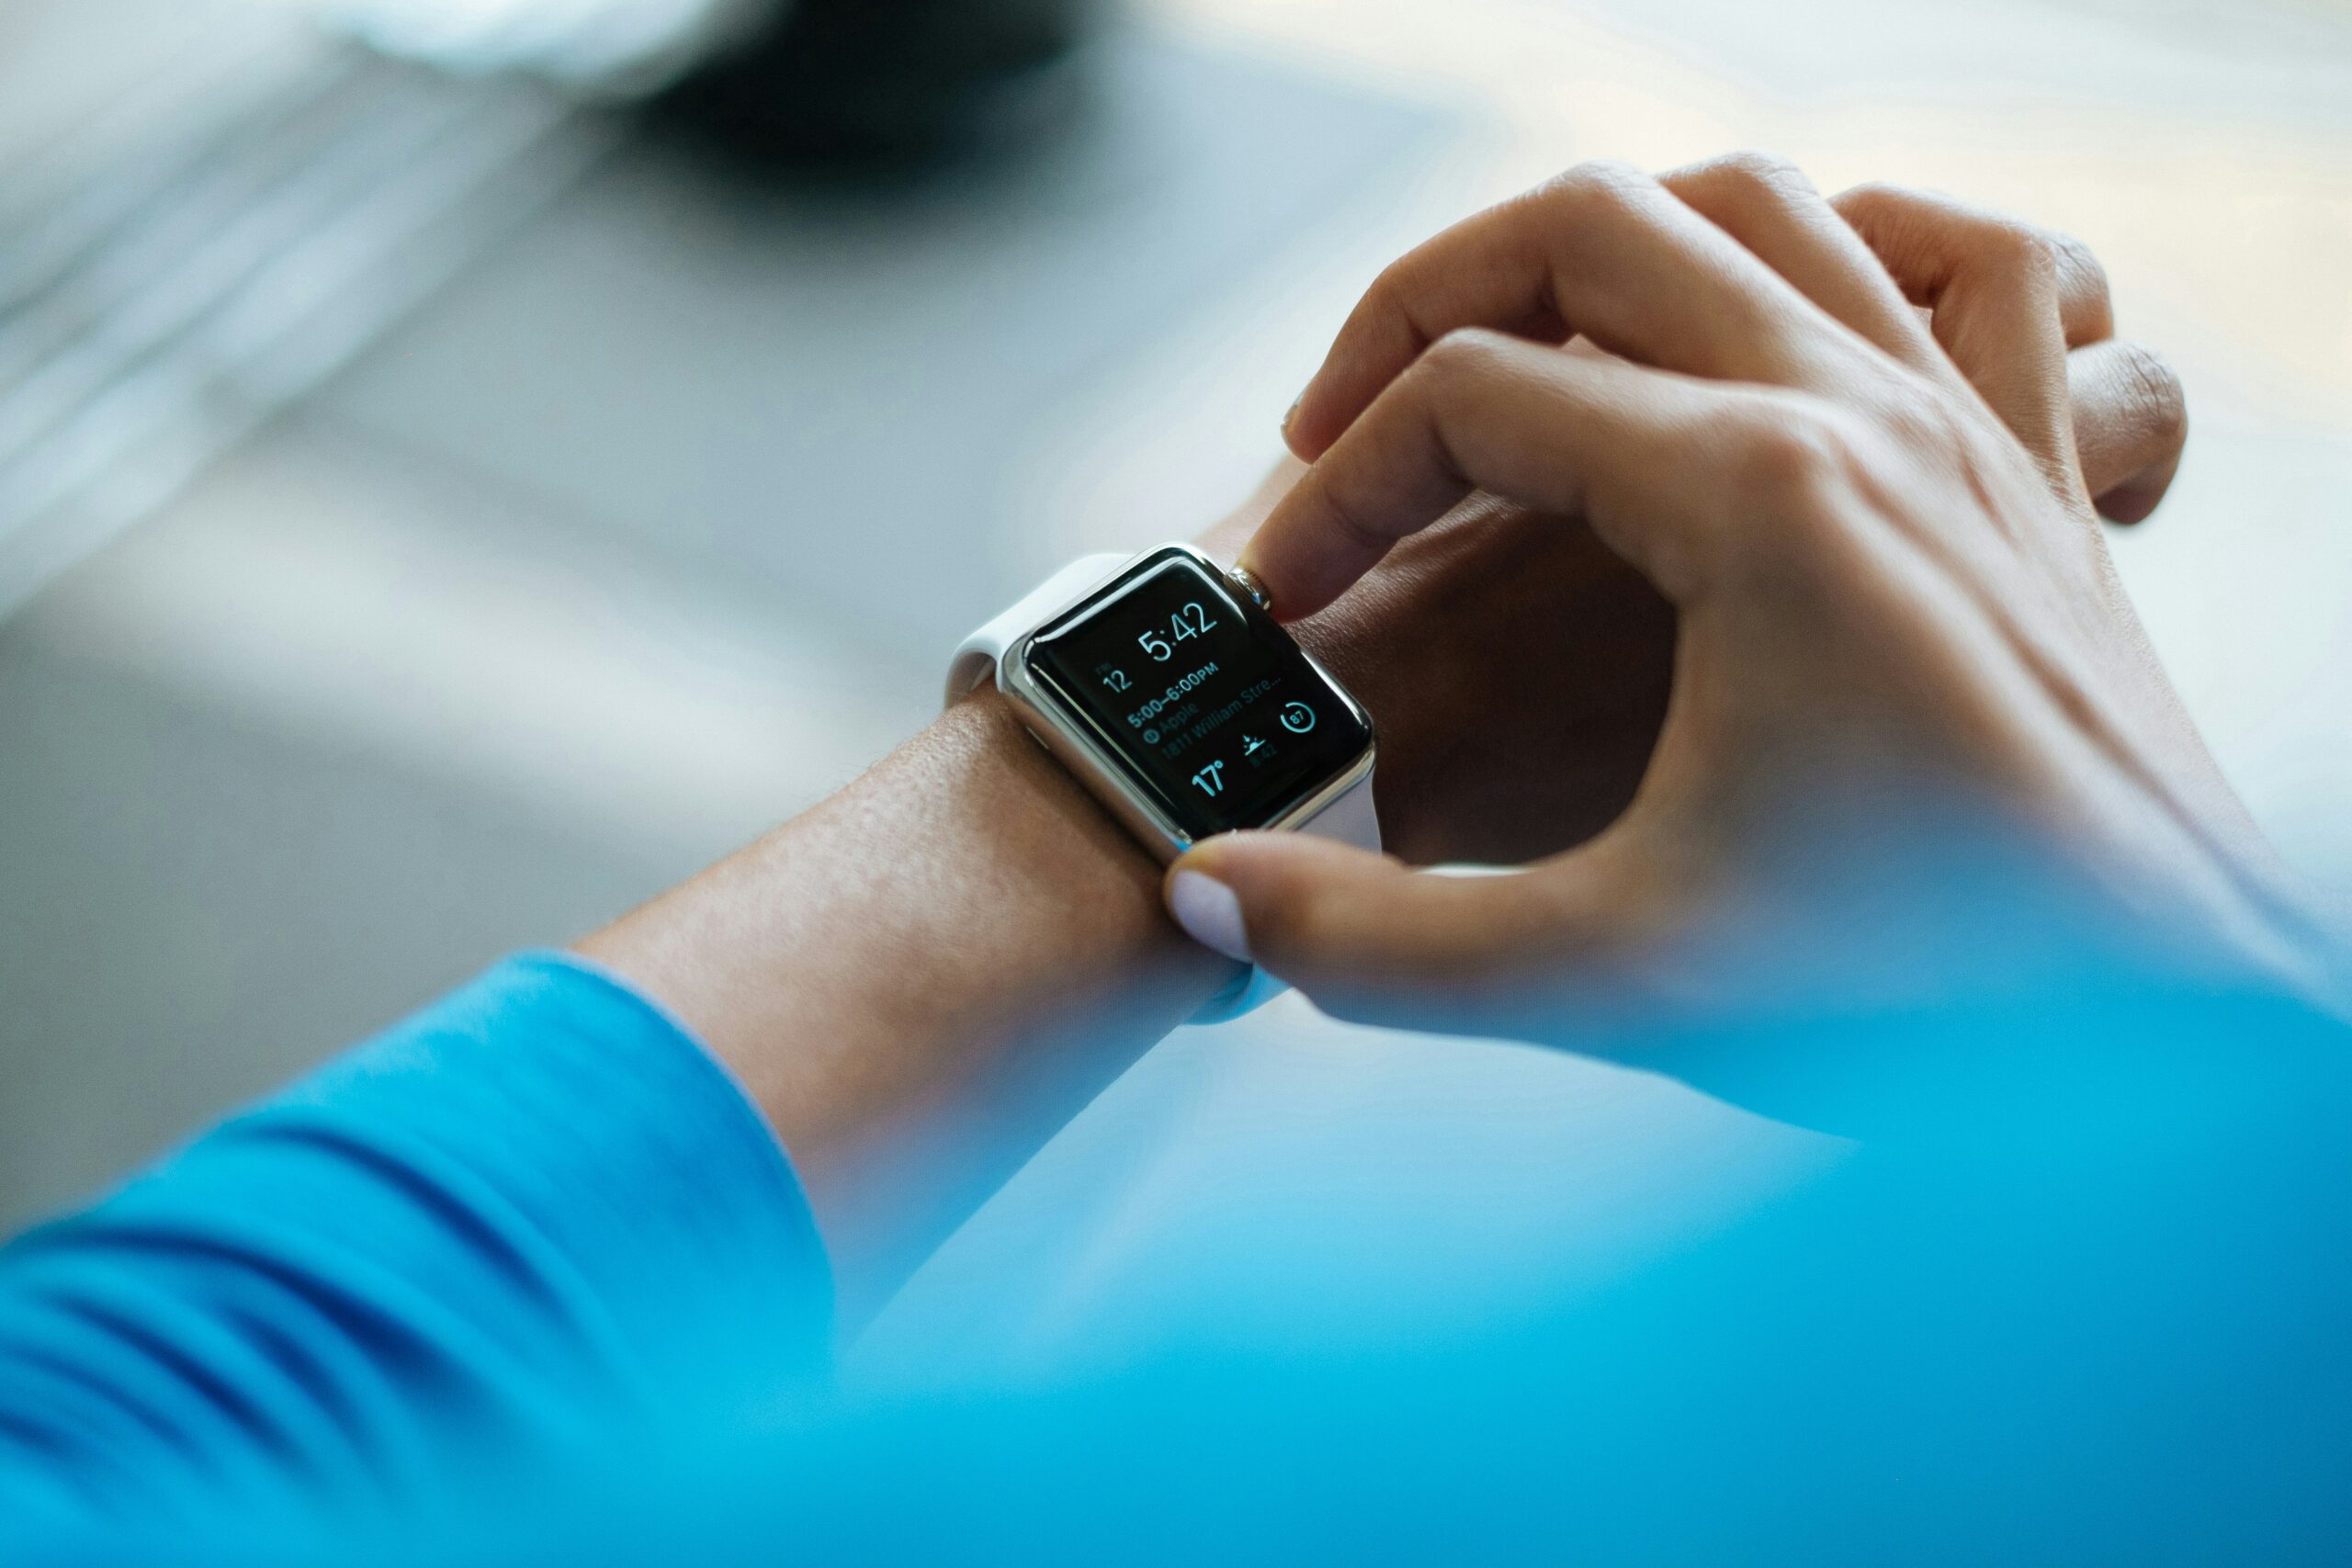 découvrez notre sélection de smartwatches dédiées à la santé pour suivre et améliorer votre bien-être au quotidien.